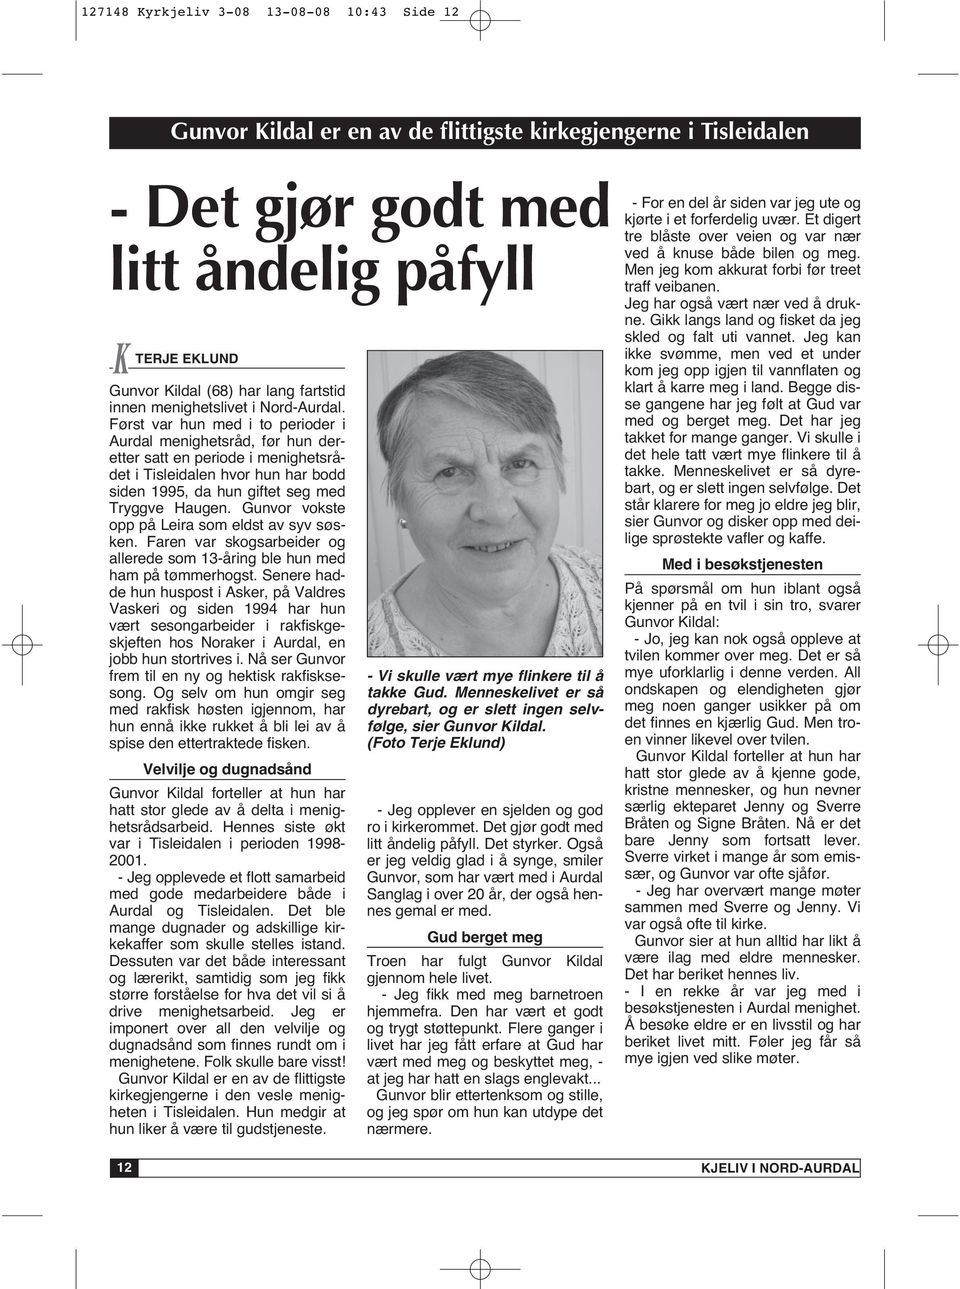 Først var hun med i to perioder i Aurdal menighetsråd, før hun deretter satt en periode i menighetsrådet i Tisleidalen hvor hun har bodd siden 1995, da hun giftet seg med Tryggve Haugen.